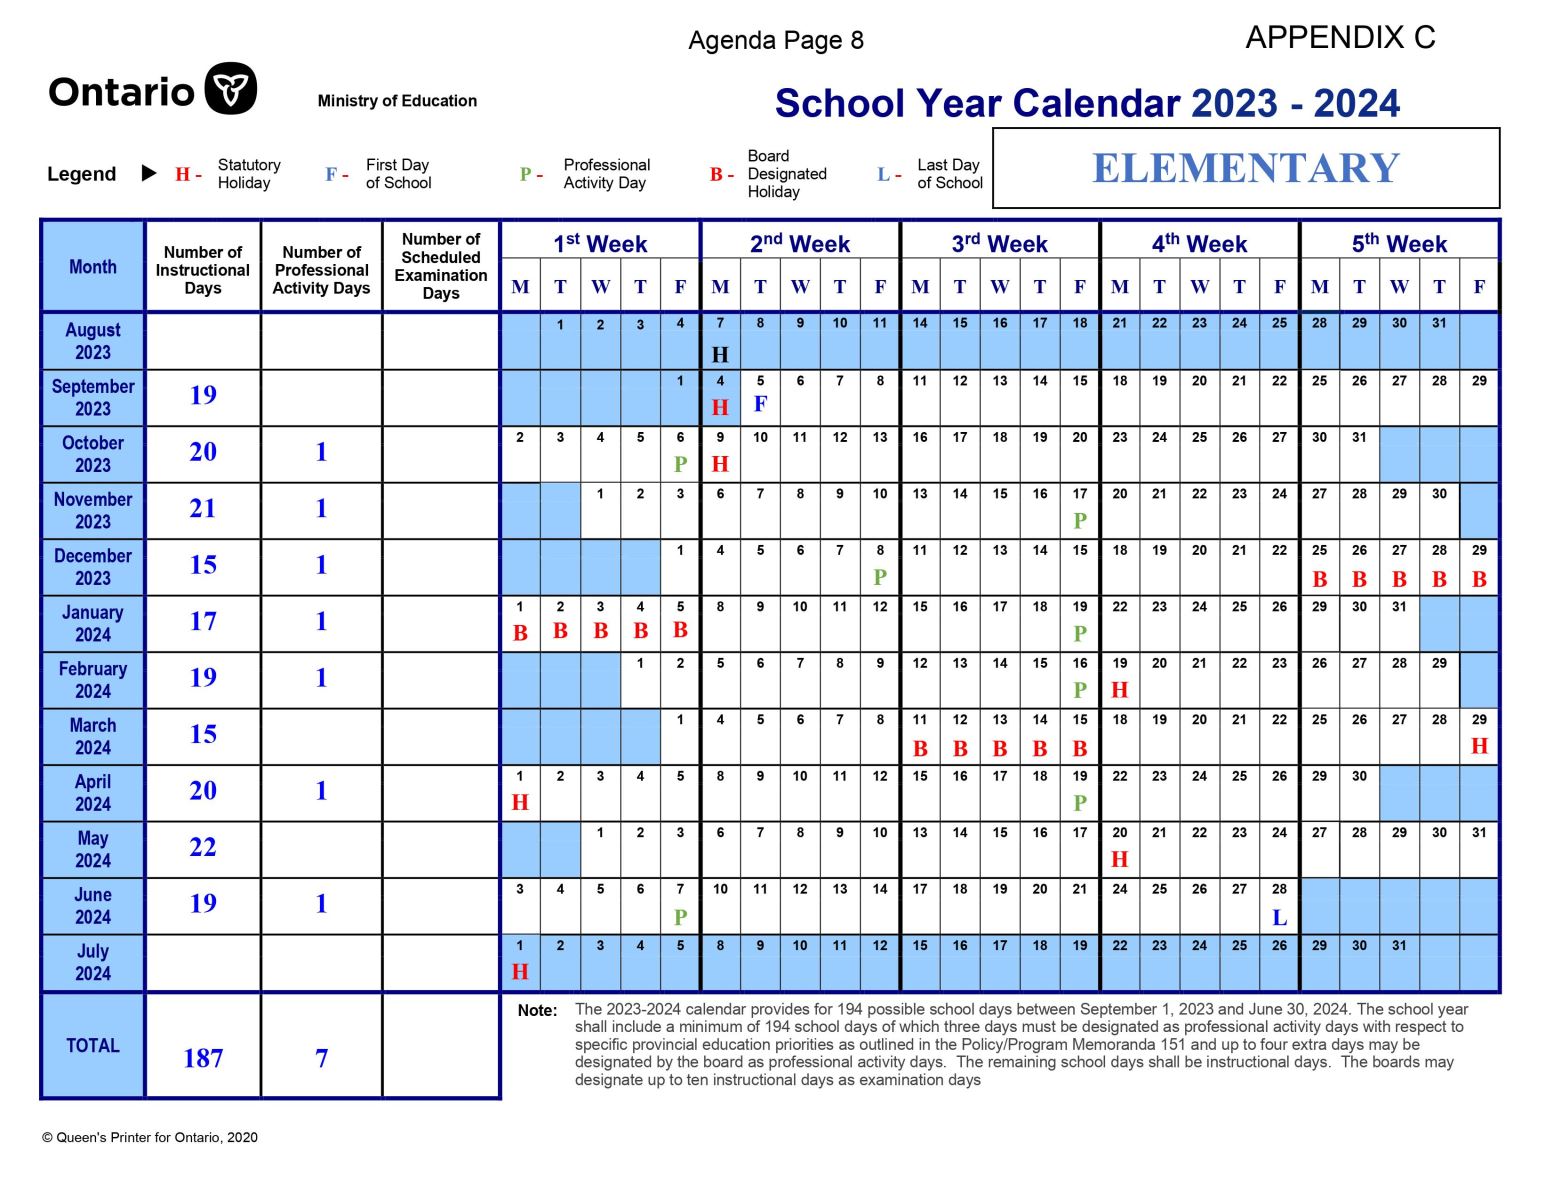 School Year Calendar pic